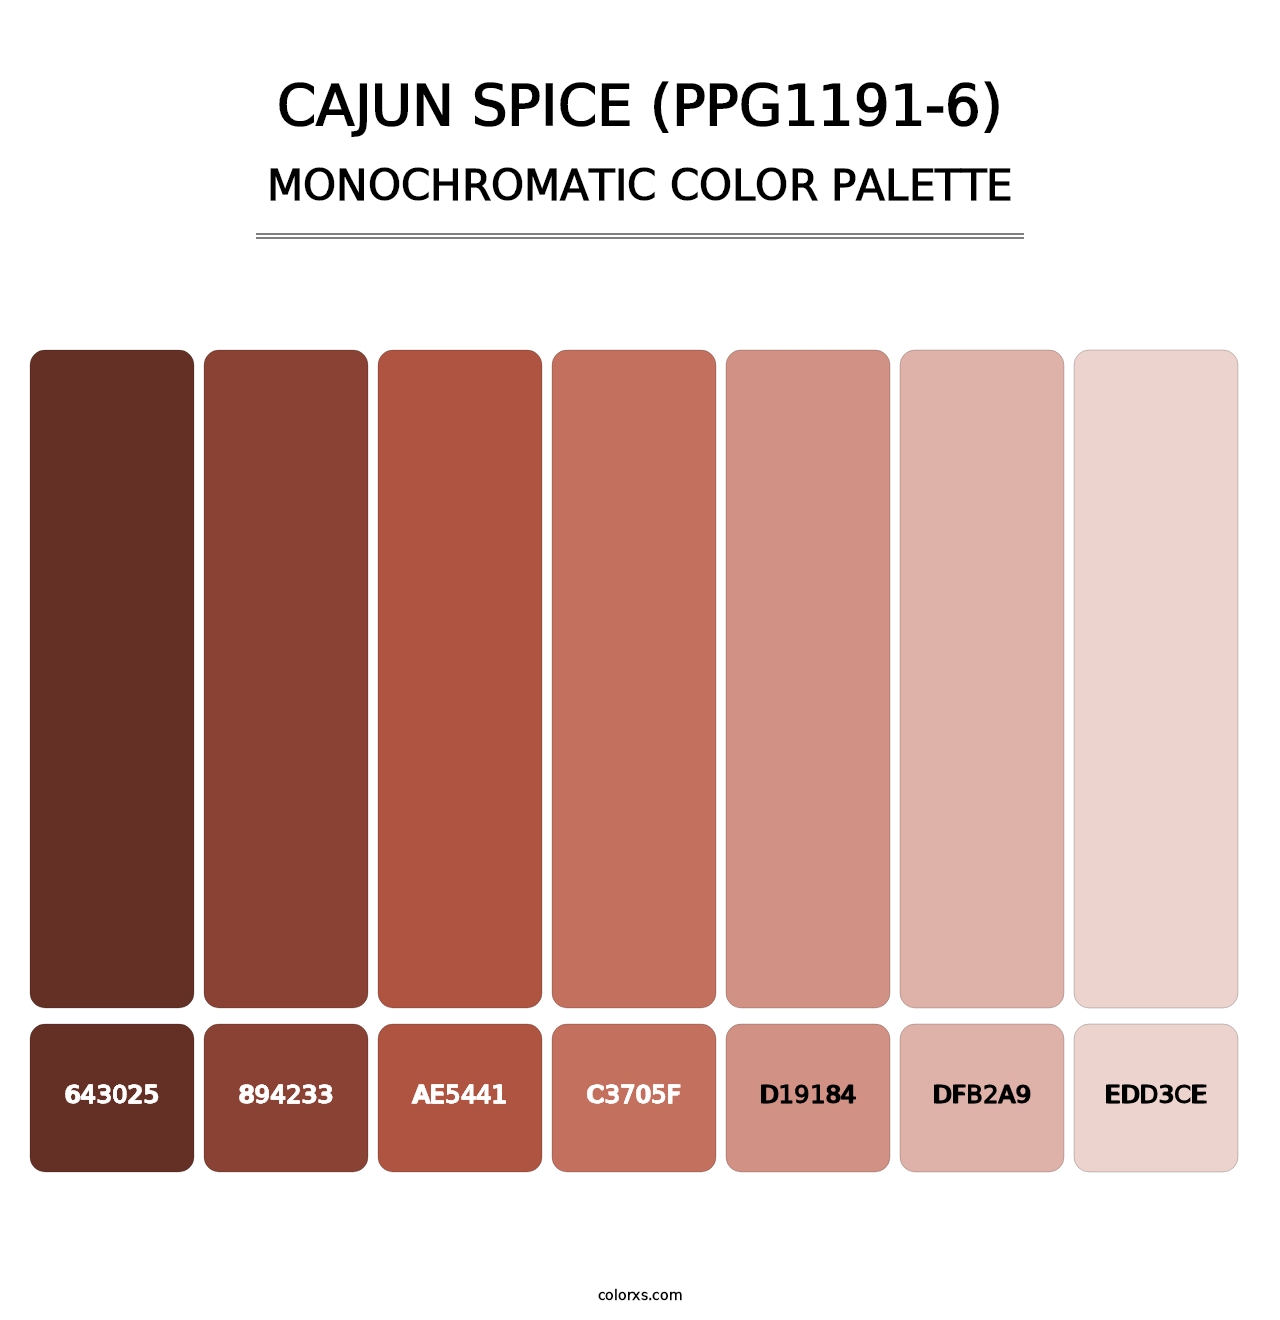 Cajun Spice (PPG1191-6) - Monochromatic Color Palette